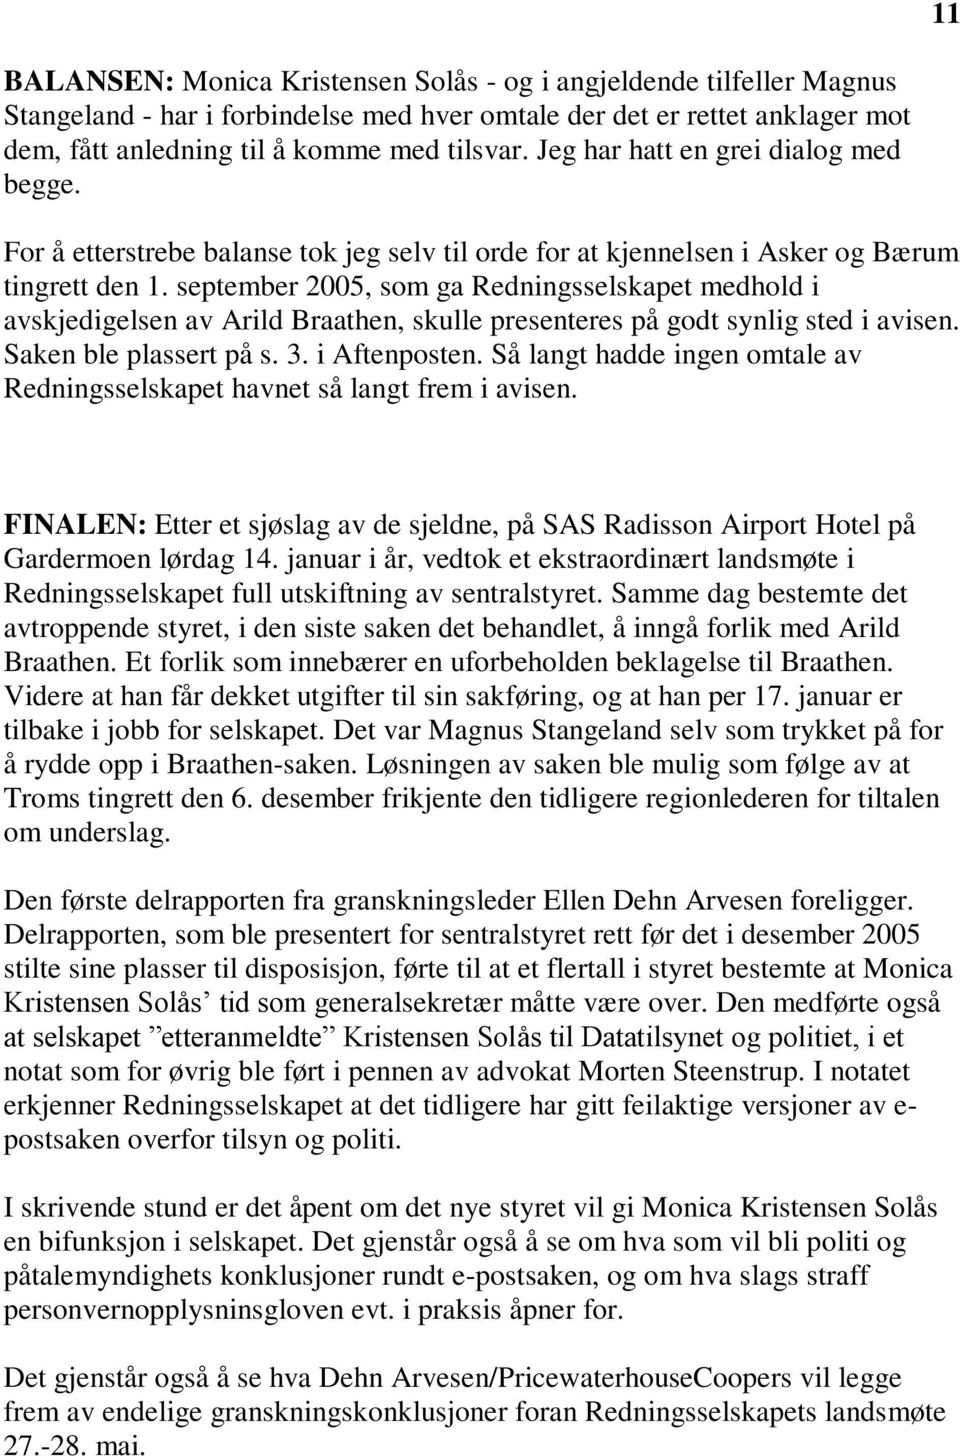 september 2005, som ga Redningsselskapet medhold i avskjedigelsen av Arild Braathen, skulle presenteres på godt synlig sted i avisen. Saken ble plassert på s. 3. i Aftenposten.